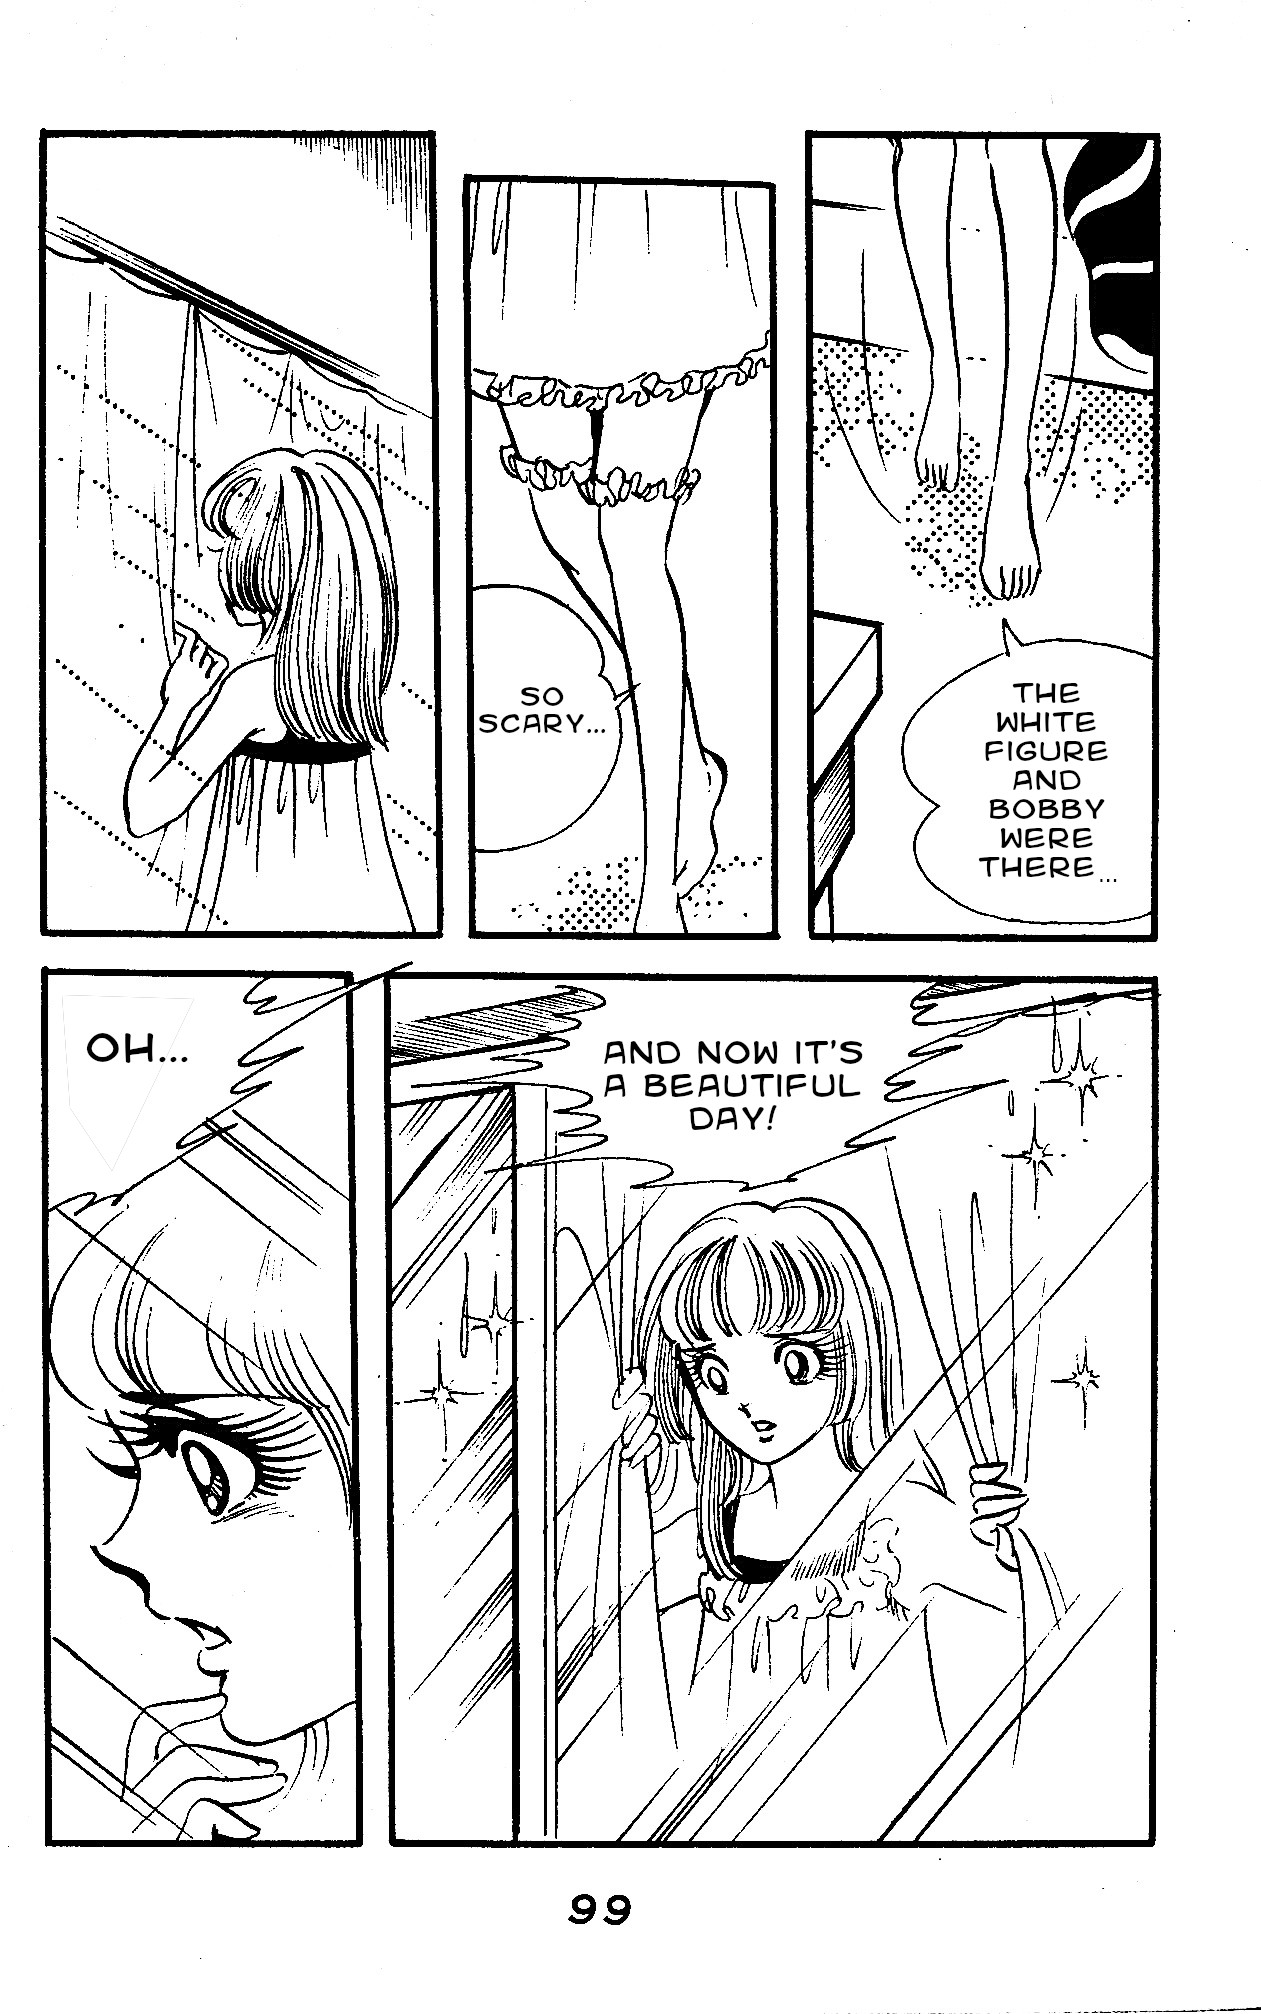 Marika Vol. 1 Ch. 2.3 Marika and the Garden Stone (Part 3)